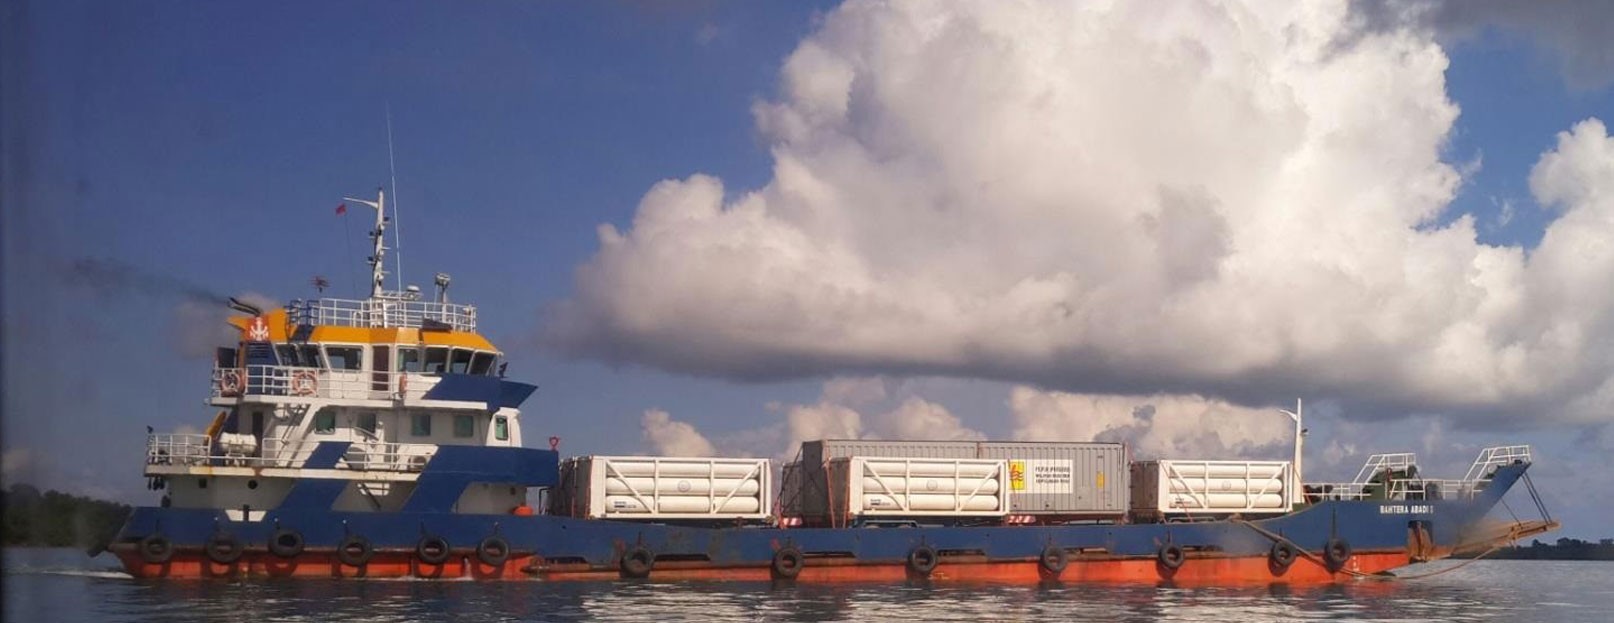 СПГ транспортный трейлер и контейнер